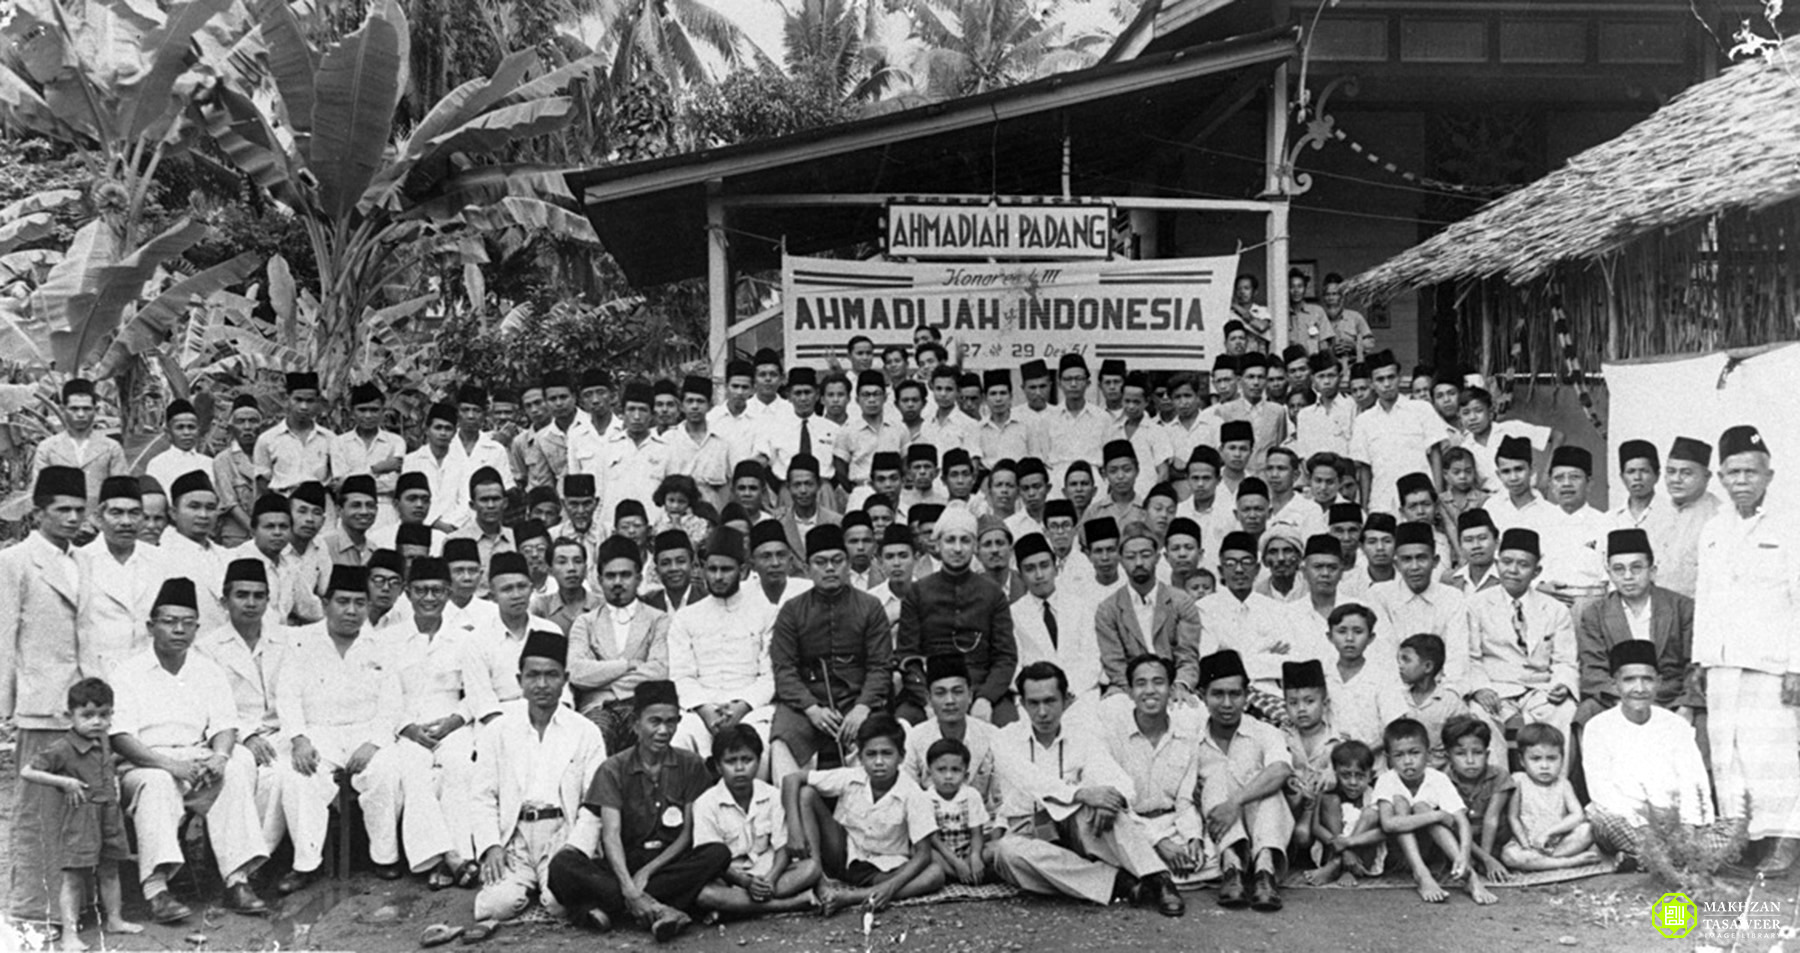 Ahmadiyya 1952 Indonesia - New Naratif